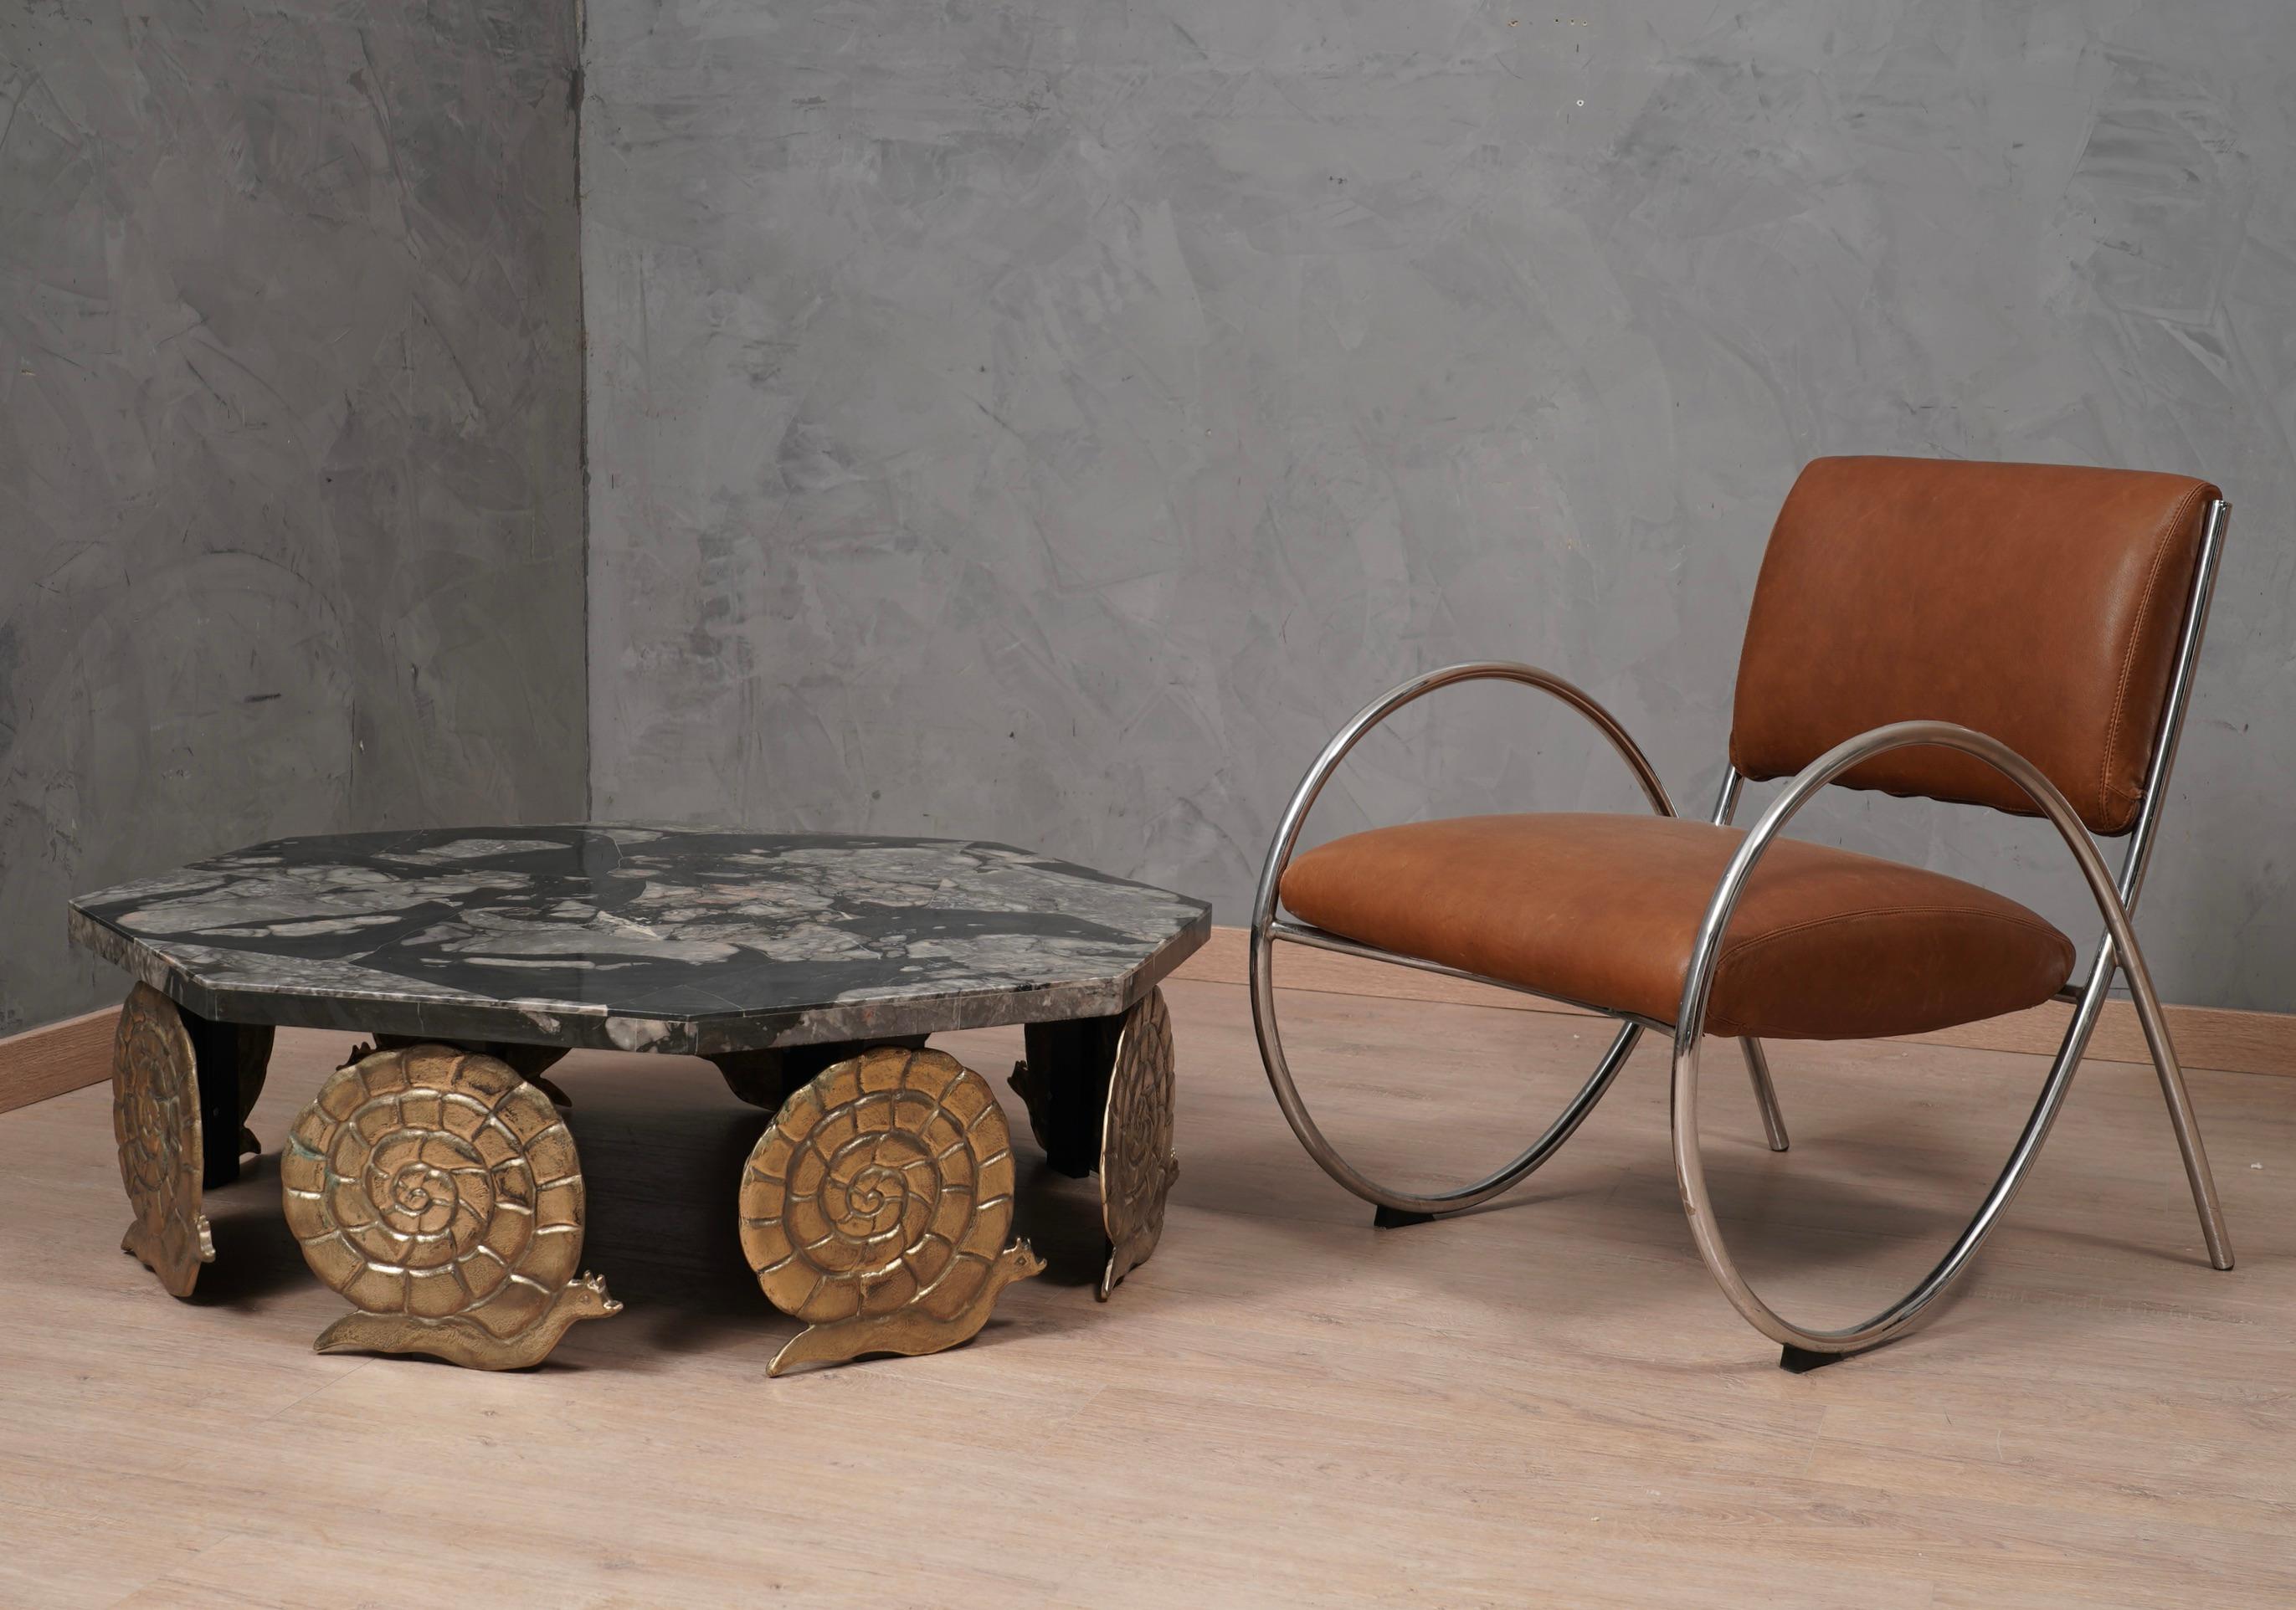 Hervorragendes Bauhaus-Design für diesen Sessel aus den 80er Jahren, Leder und verchromter Stahl. Klare und geradlinige Formen, für einen sehr fesselnden Design-Sessel.

Der Sessel besteht aus einer gebogenen Struktur aus verchromten Metallrohren.